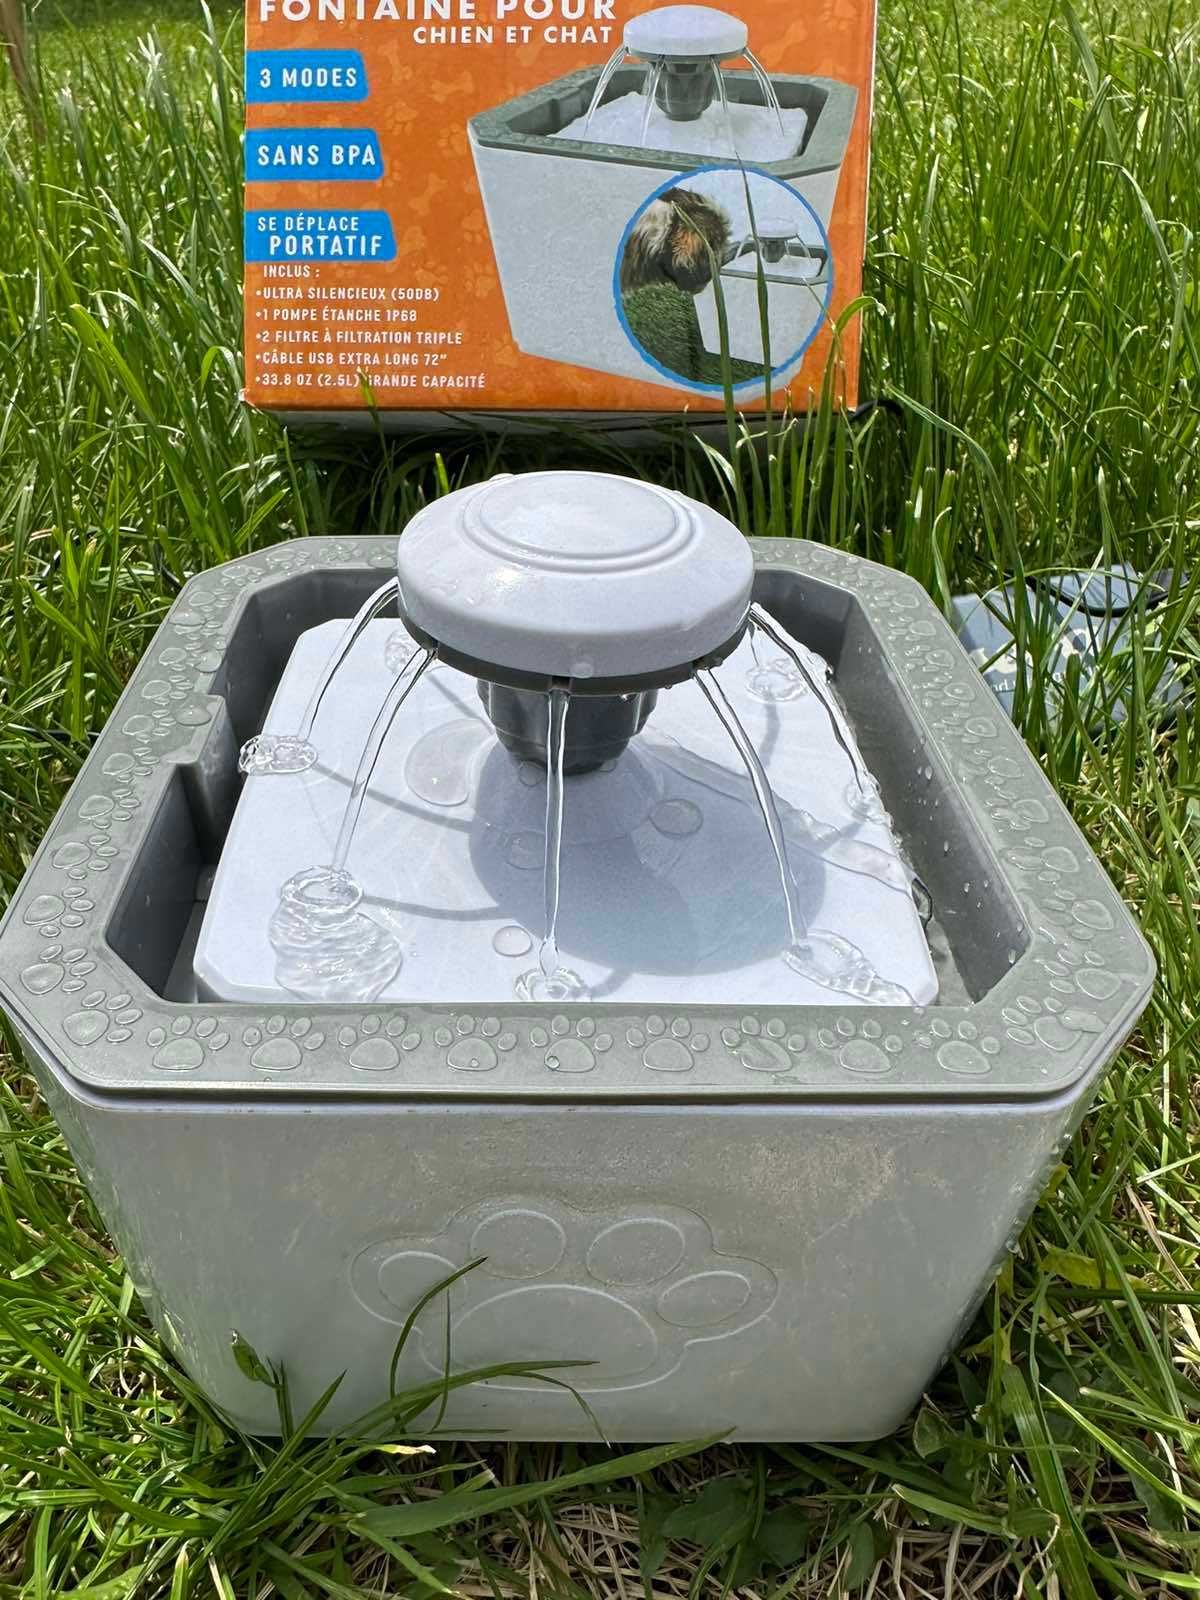 Фонтан-поилка автоматическая для домашних животных PET WATER FOUNTAIN